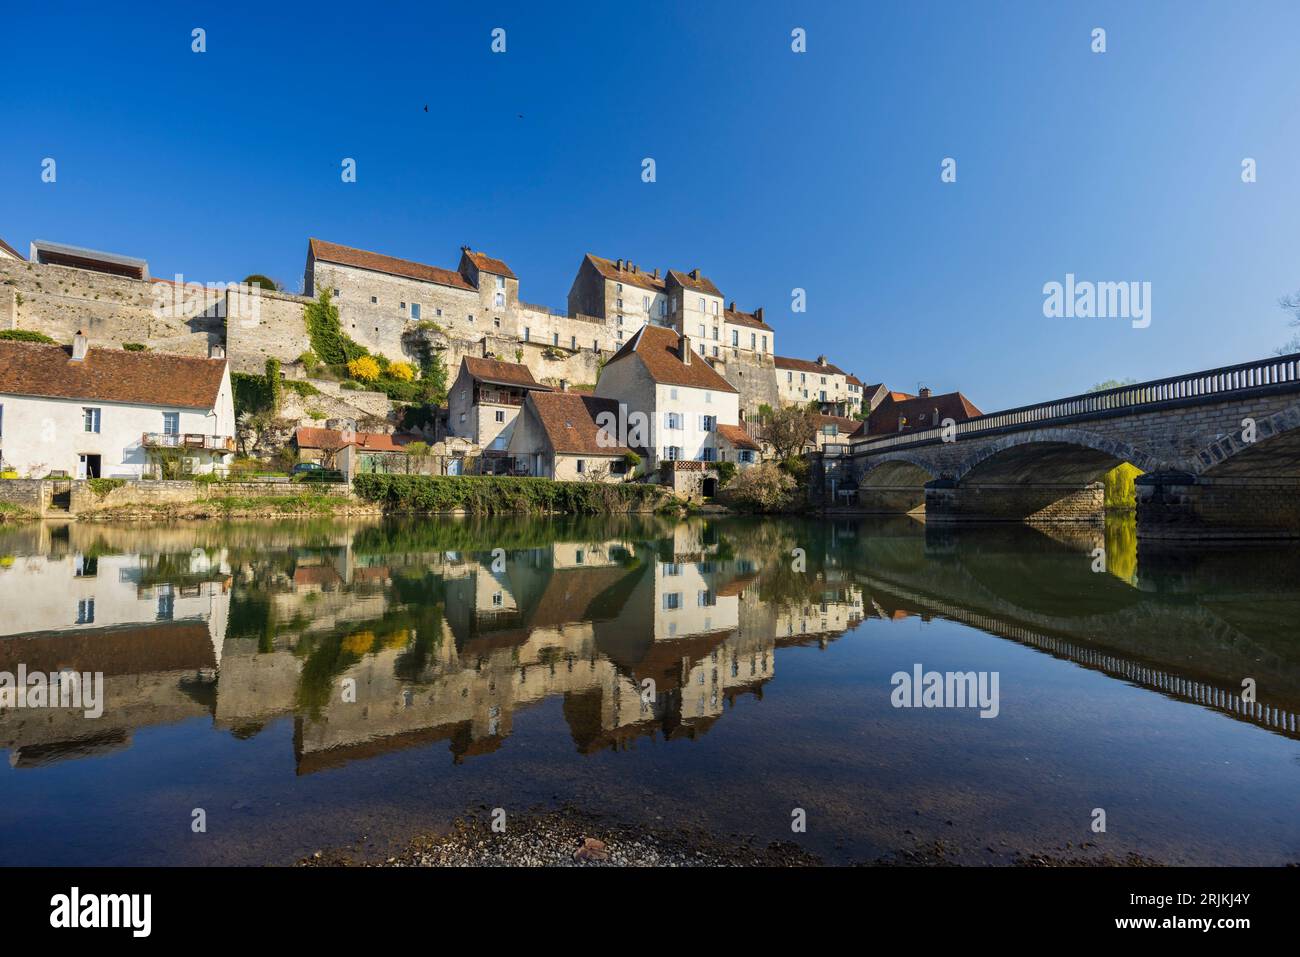 Petite ville typique de Pesmes avec la rivière L Orgon, haute-Saone, France. Banque D'Images